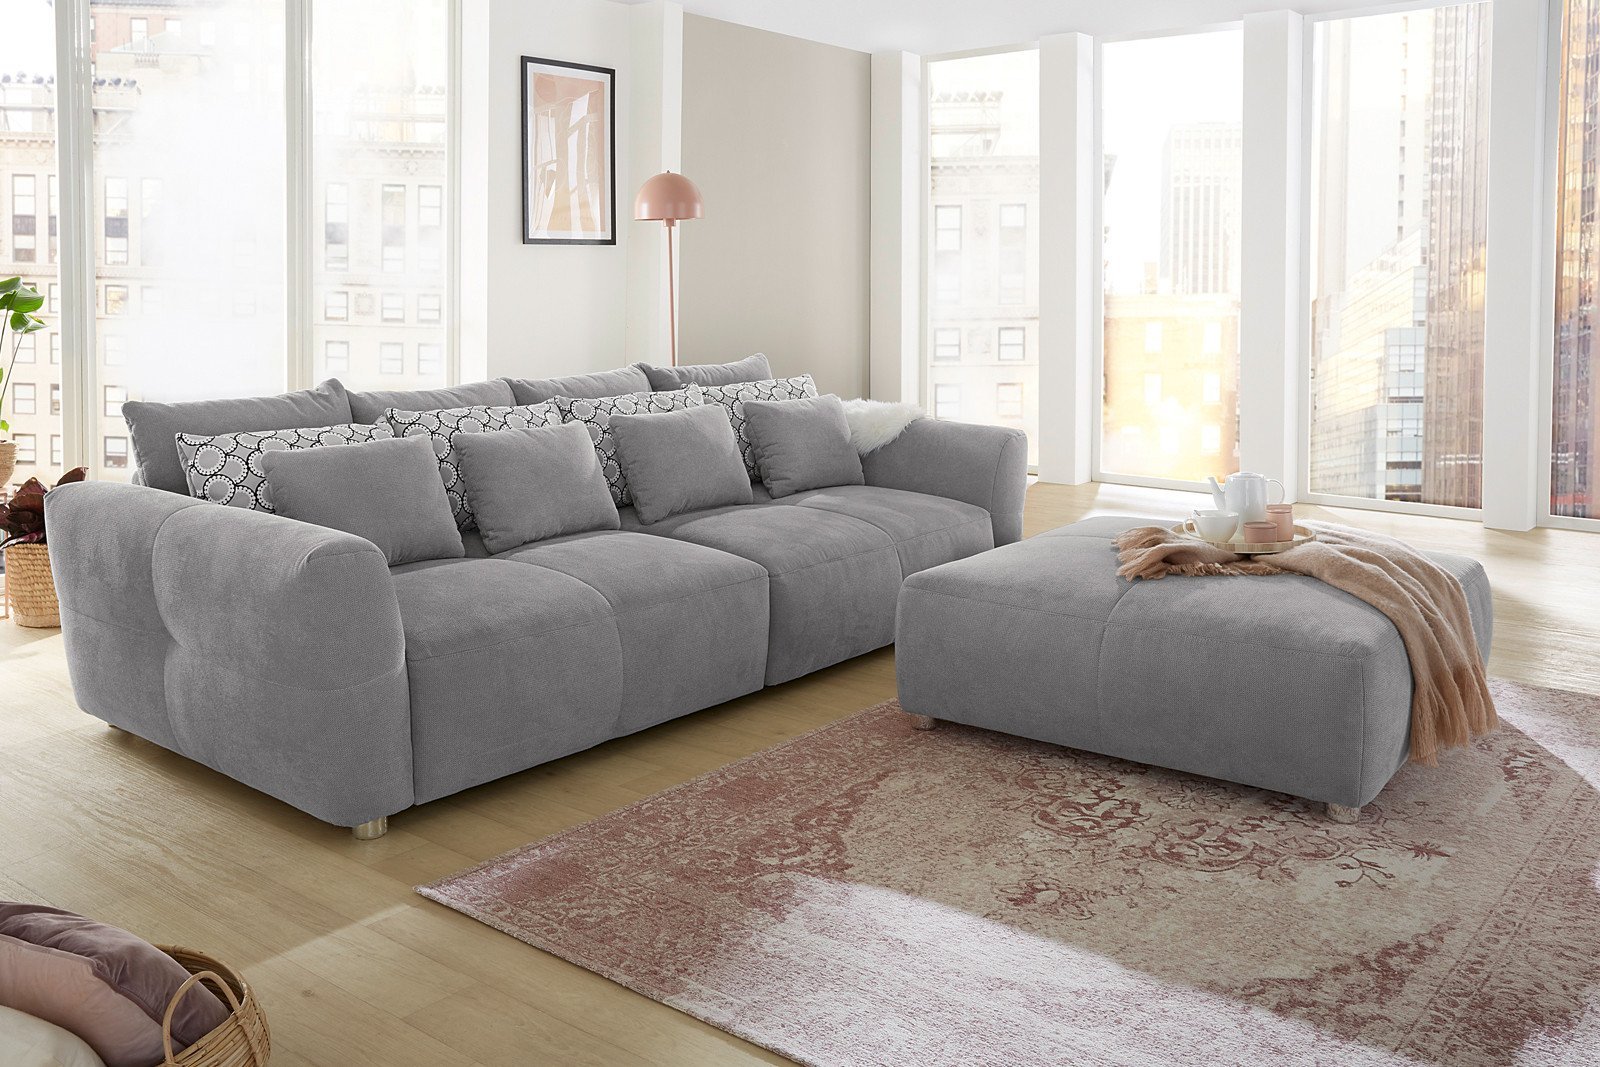 Jockenhöfer Polstermöbel Gulliver Big Sofa silver | Möbel Letz - Ihr  Online-Shop